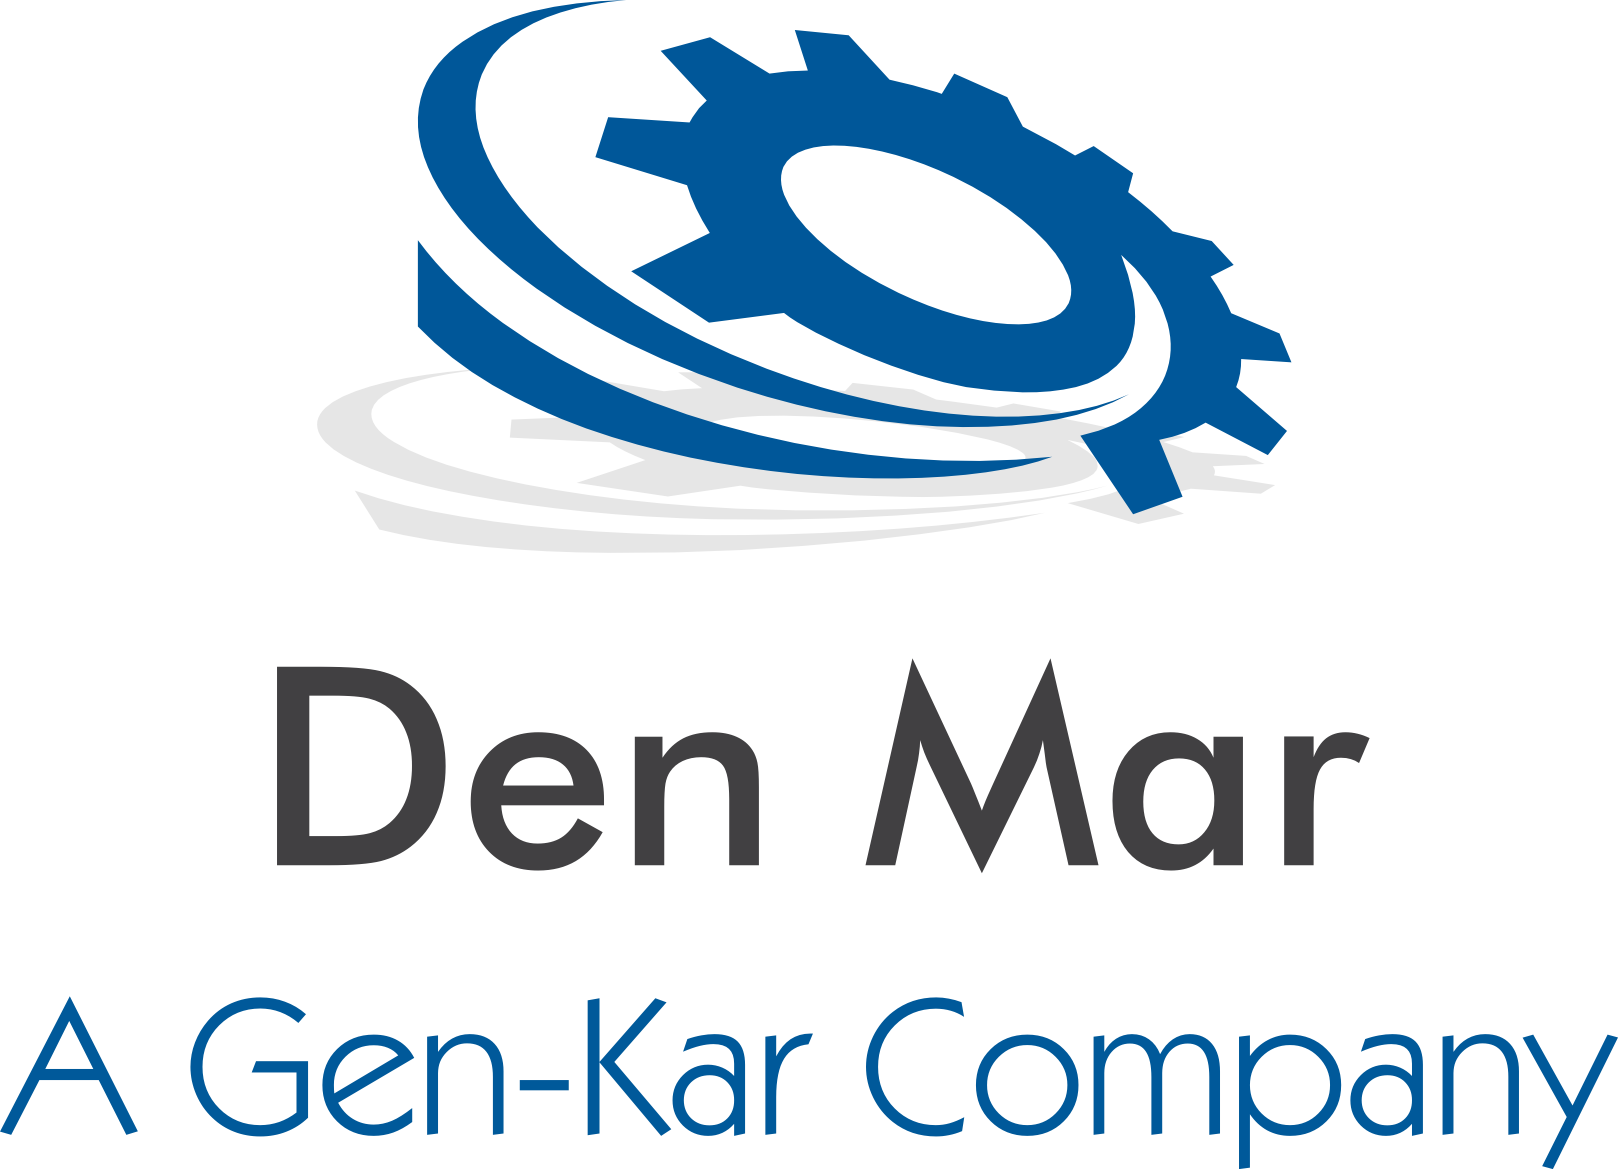 Den Mar logo